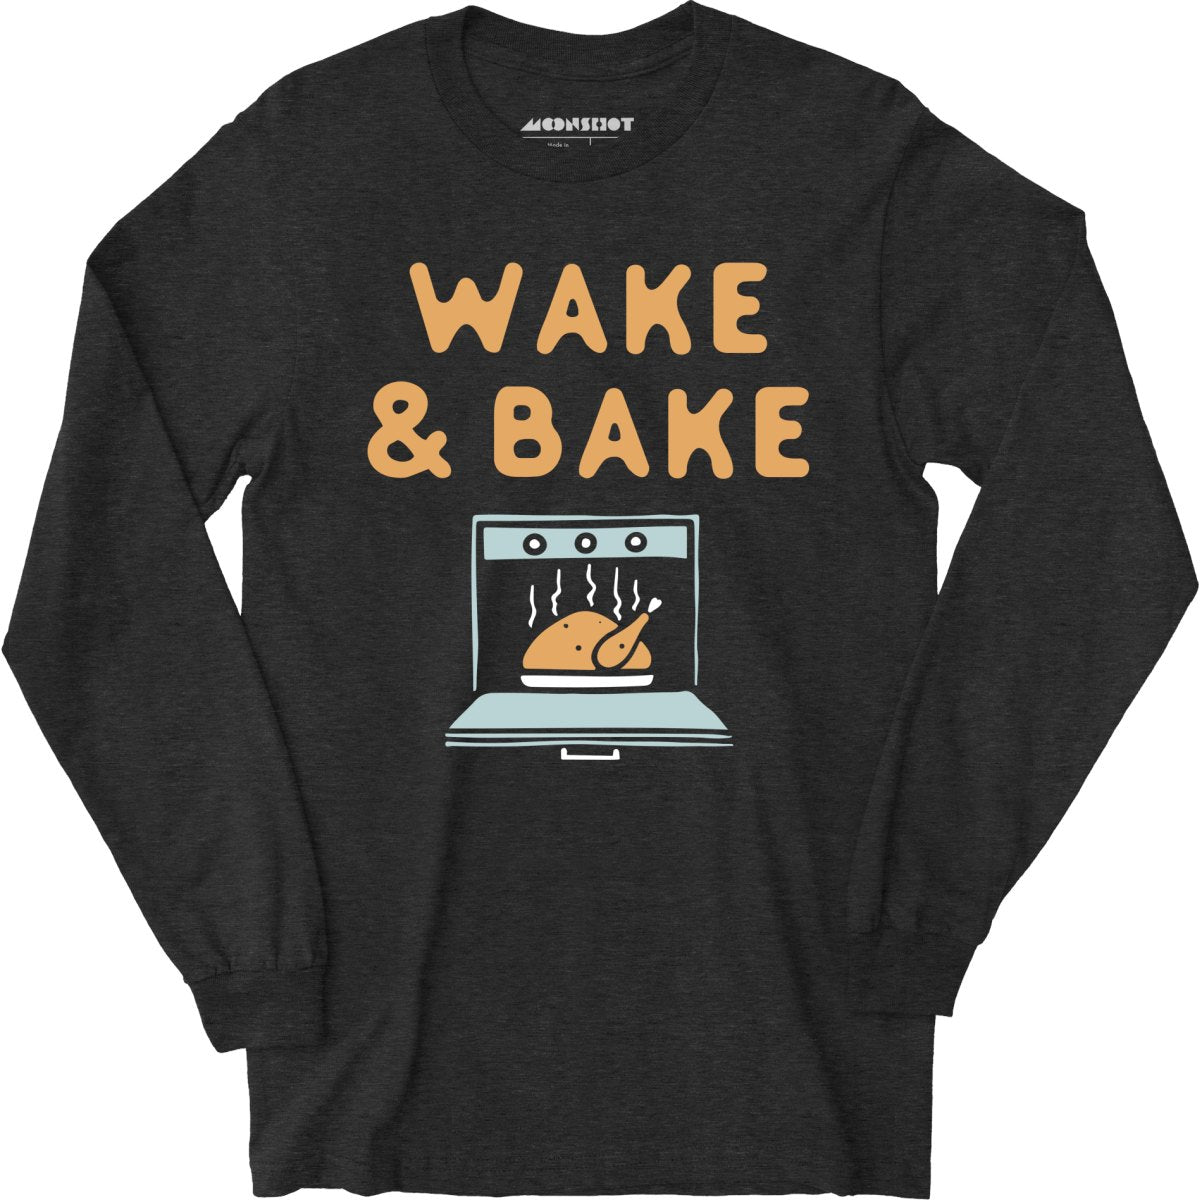 Wake & Bake - Long Sleeve T-Shirt